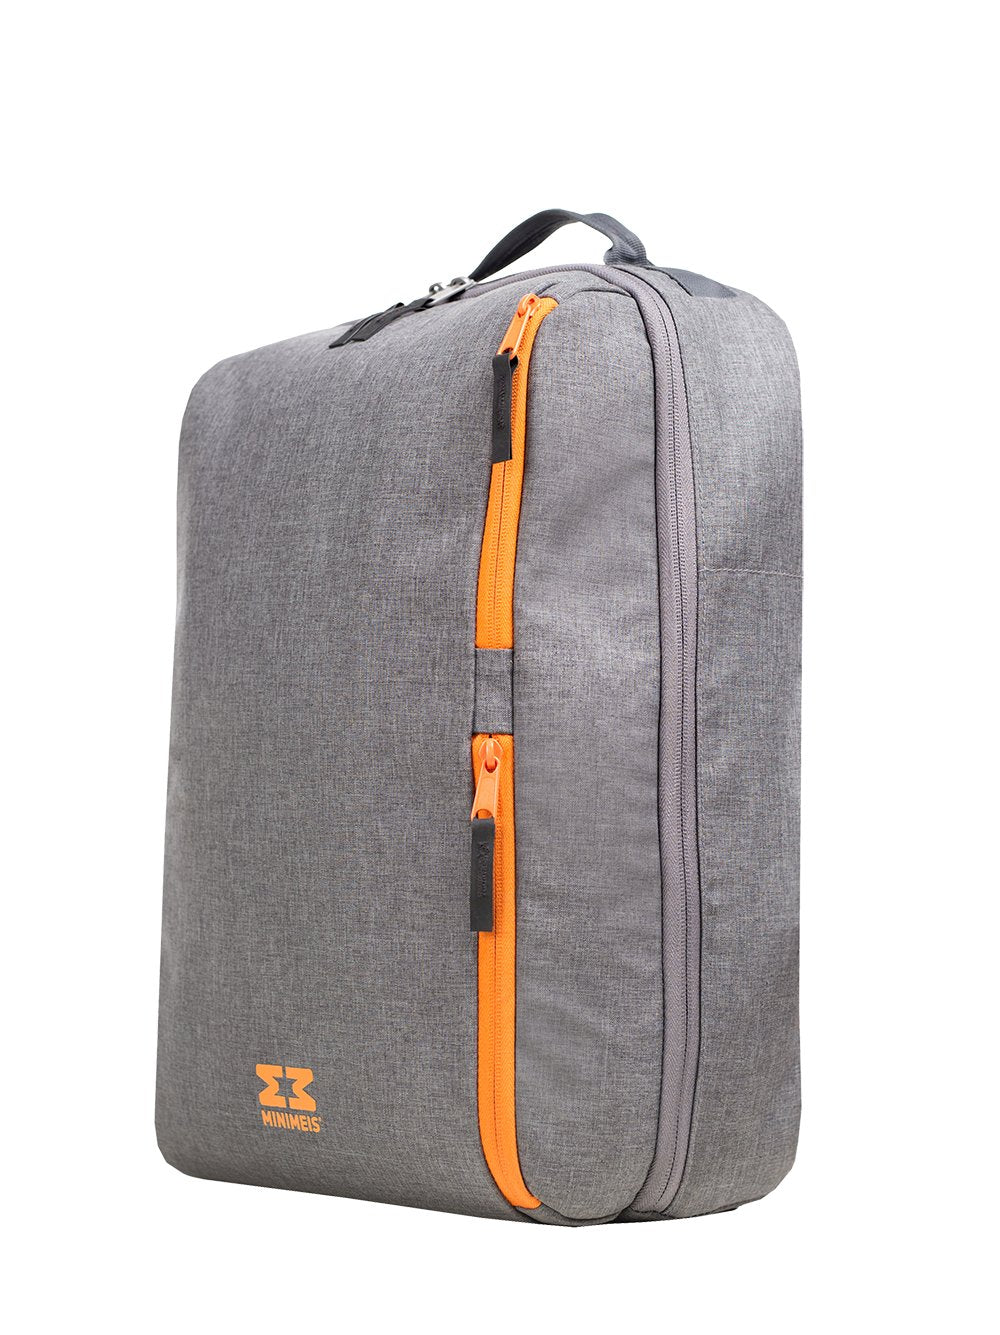 MiniMeis - Backpack